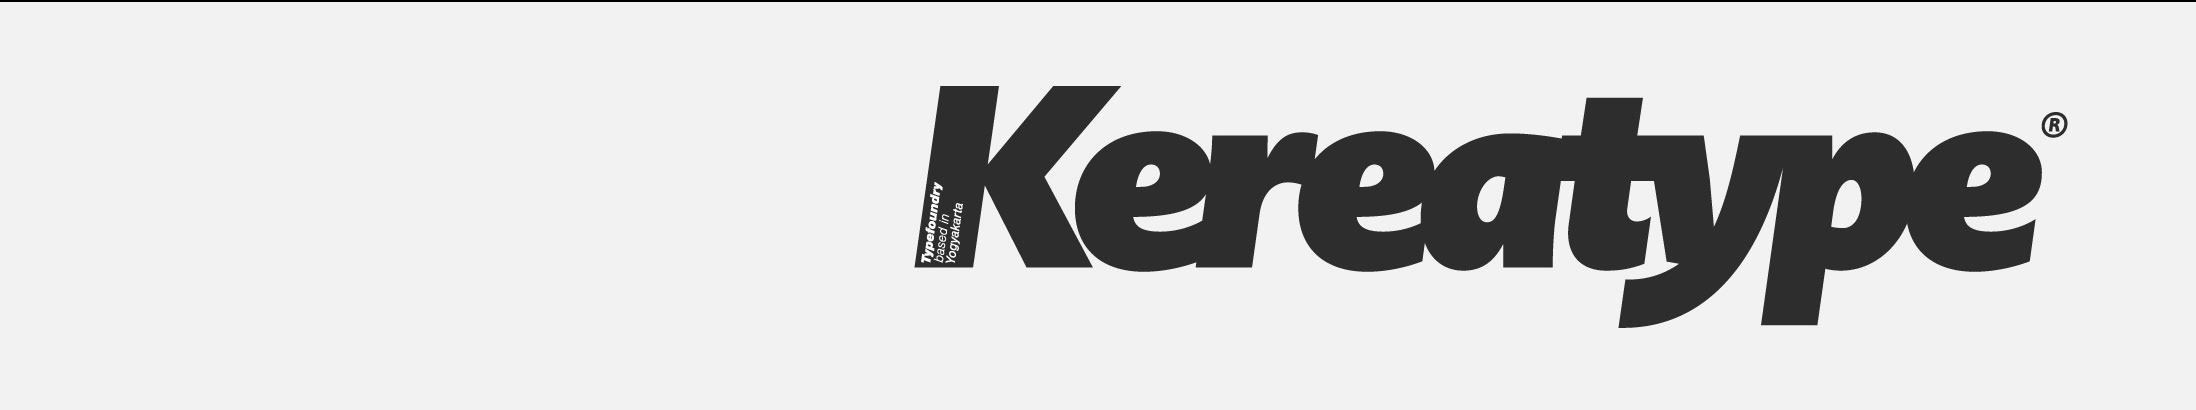 Kereatype Studio's profile banner